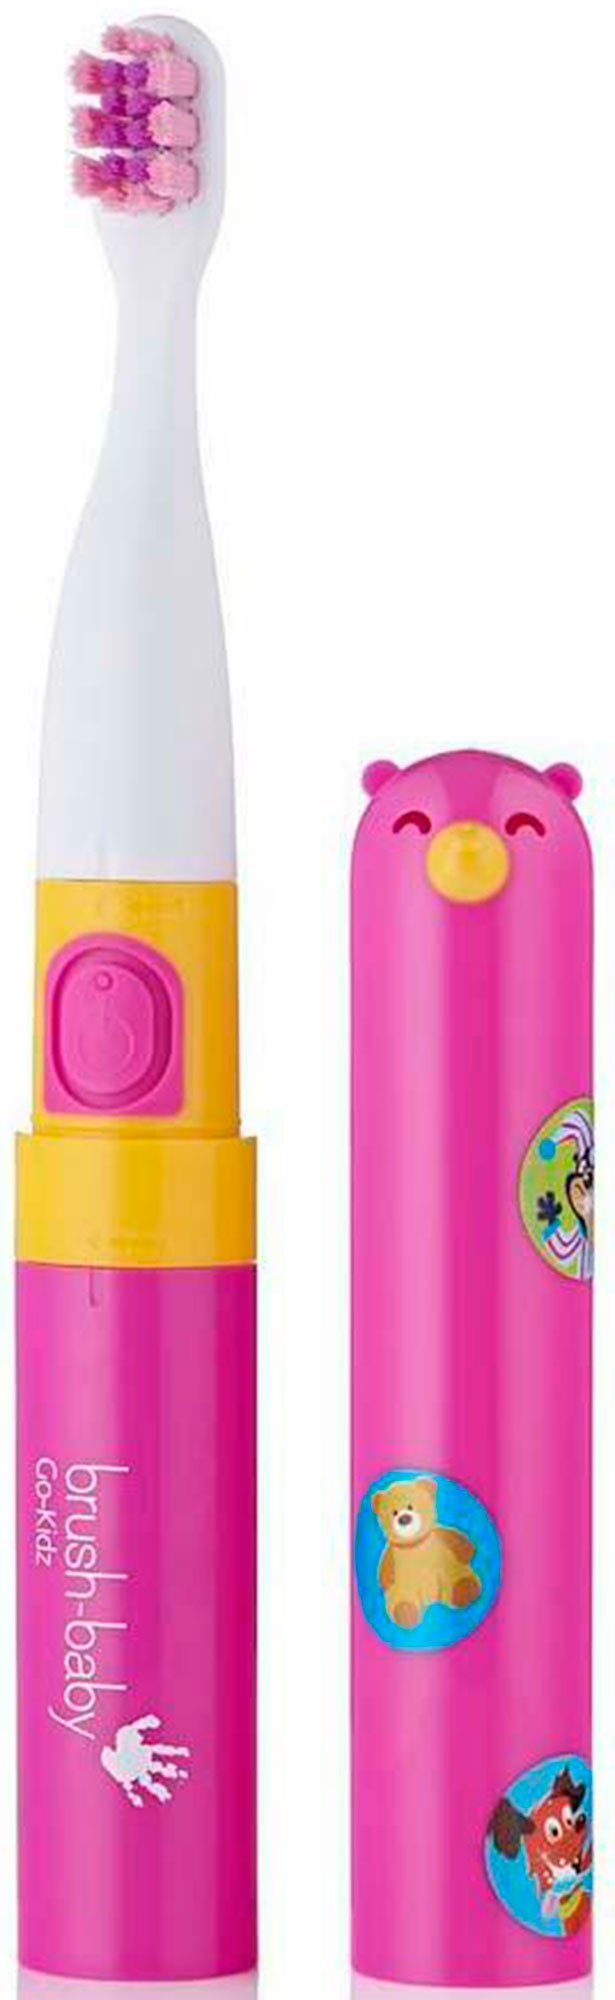 Купить Зубная щетка электрическая Brush Baby Go-Kidz Розовая, Brushbaby Ltd